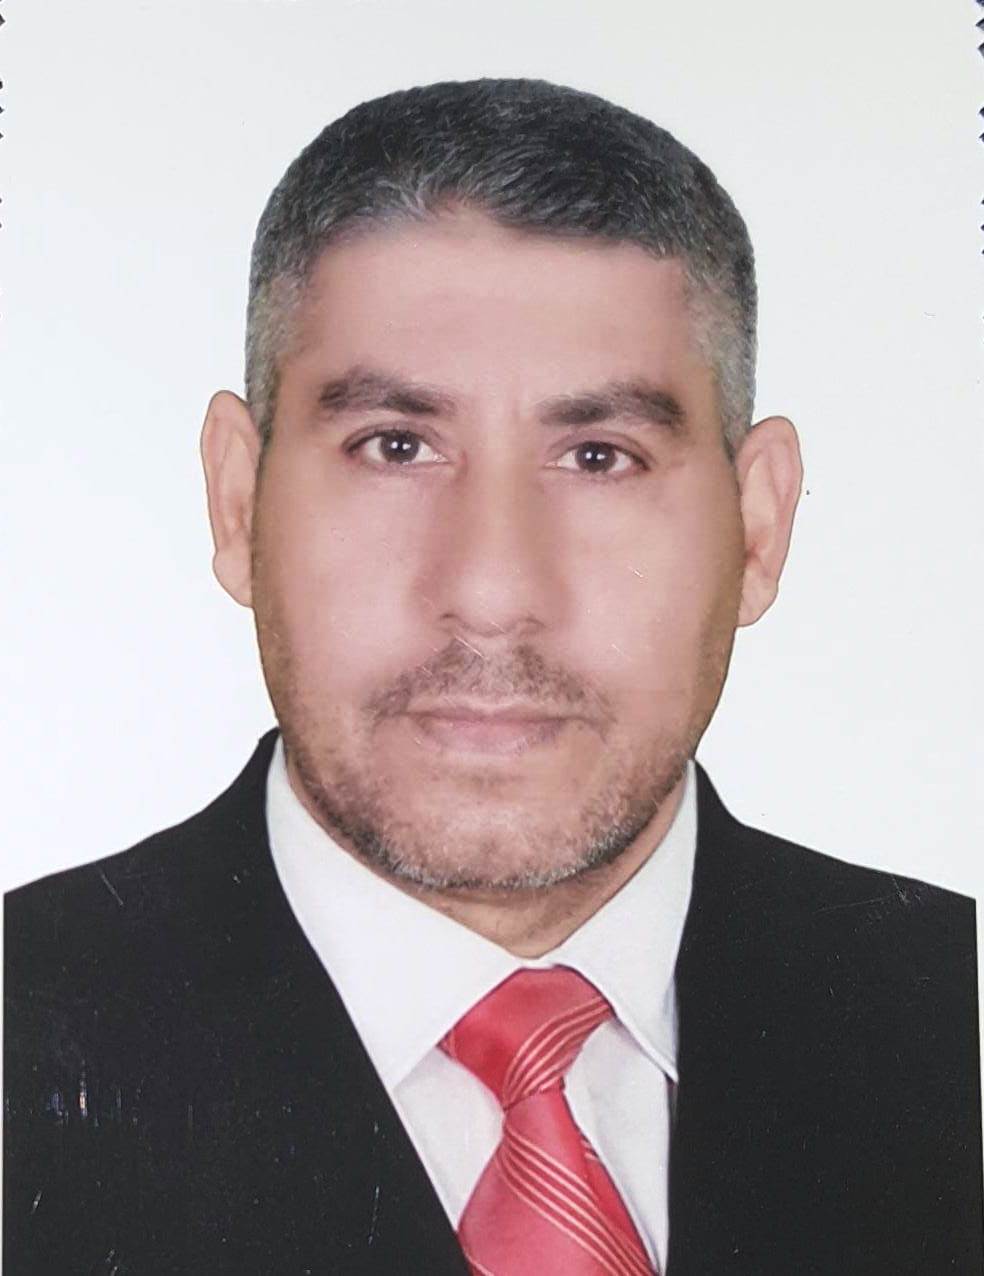 Dhia Chasib Ali Al-Suhaily